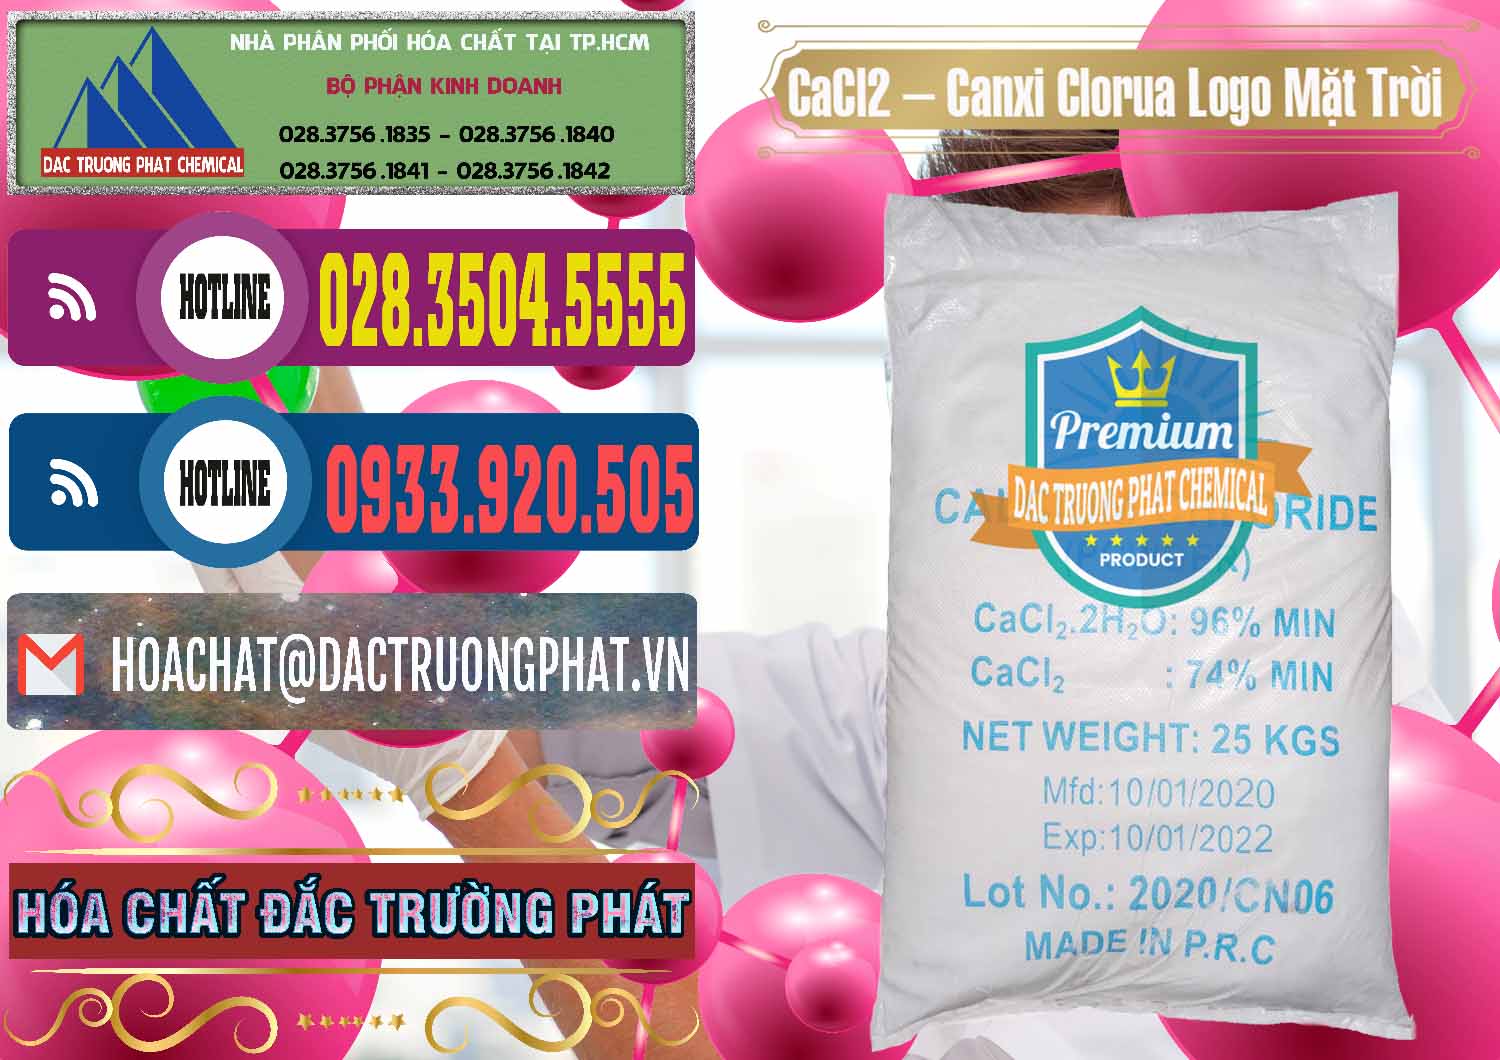 Nhà phân phối ( bán ) CaCl2 – Canxi Clorua 96% Logo Mặt Trời Trung Quốc China - 0041 - Cty chuyên kinh doanh - cung cấp hóa chất tại TP.HCM - muabanhoachat.com.vn